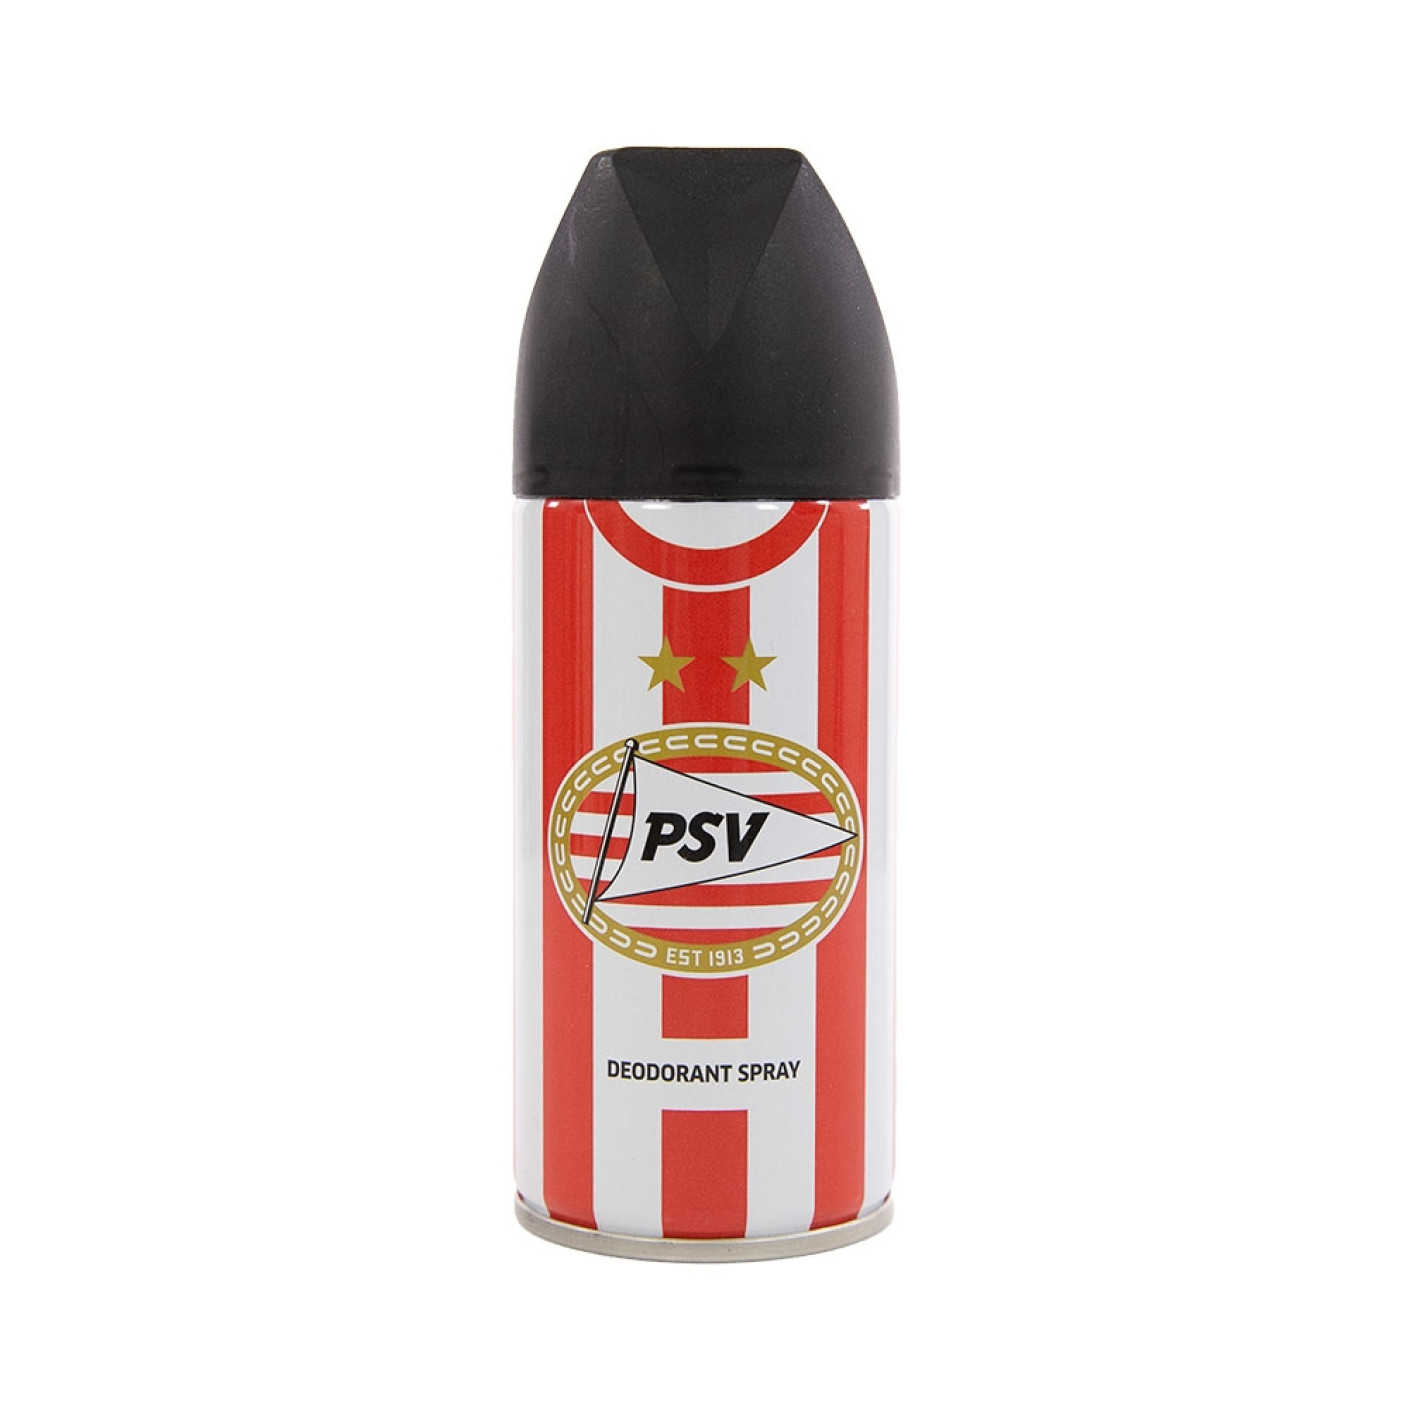 PSV Deodorant Ronde-hals